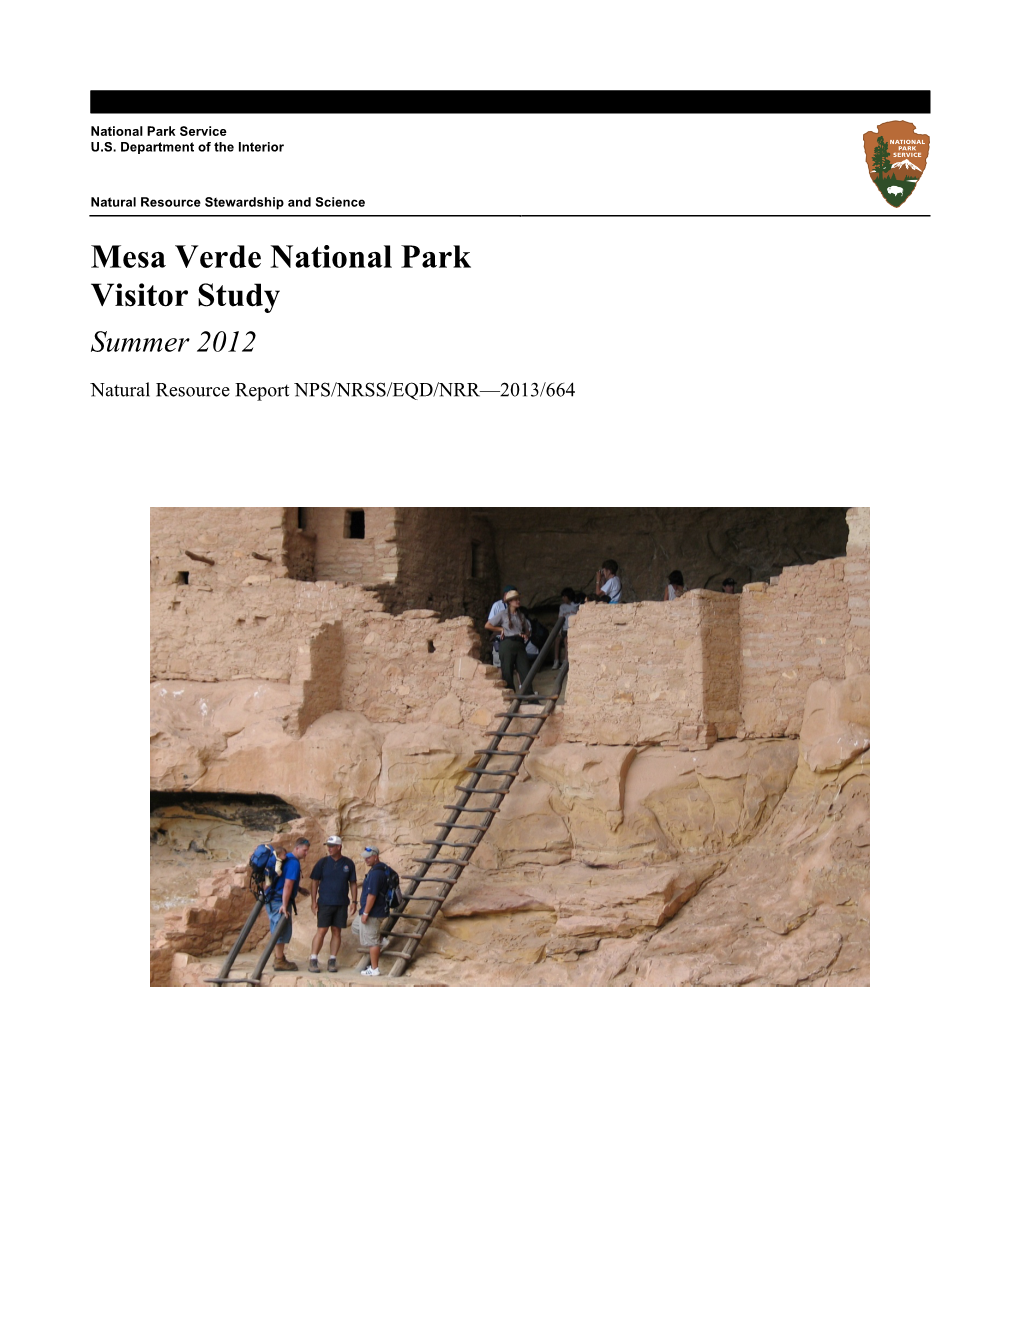 Mesa Verde National Park Visitor Study Summer 2012